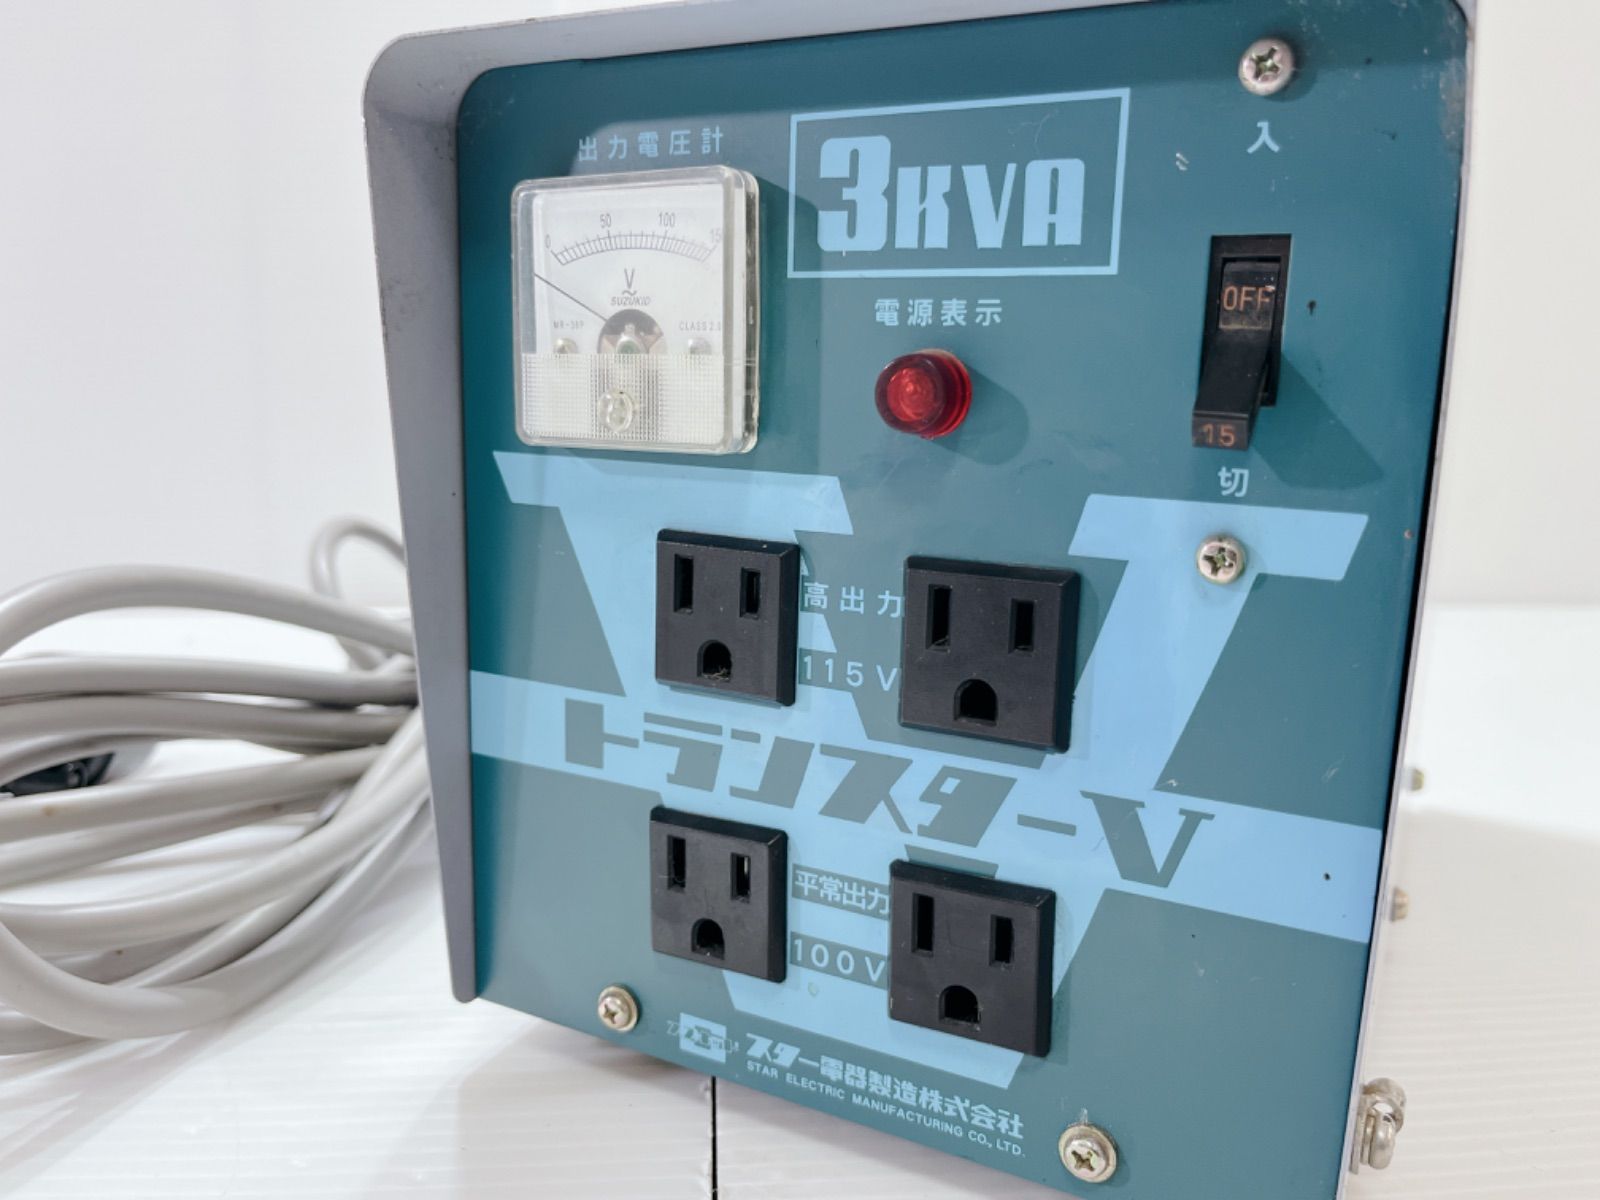 スター電器 トランスターV変圧器 降圧専用入力電圧 200V型式STV-3000